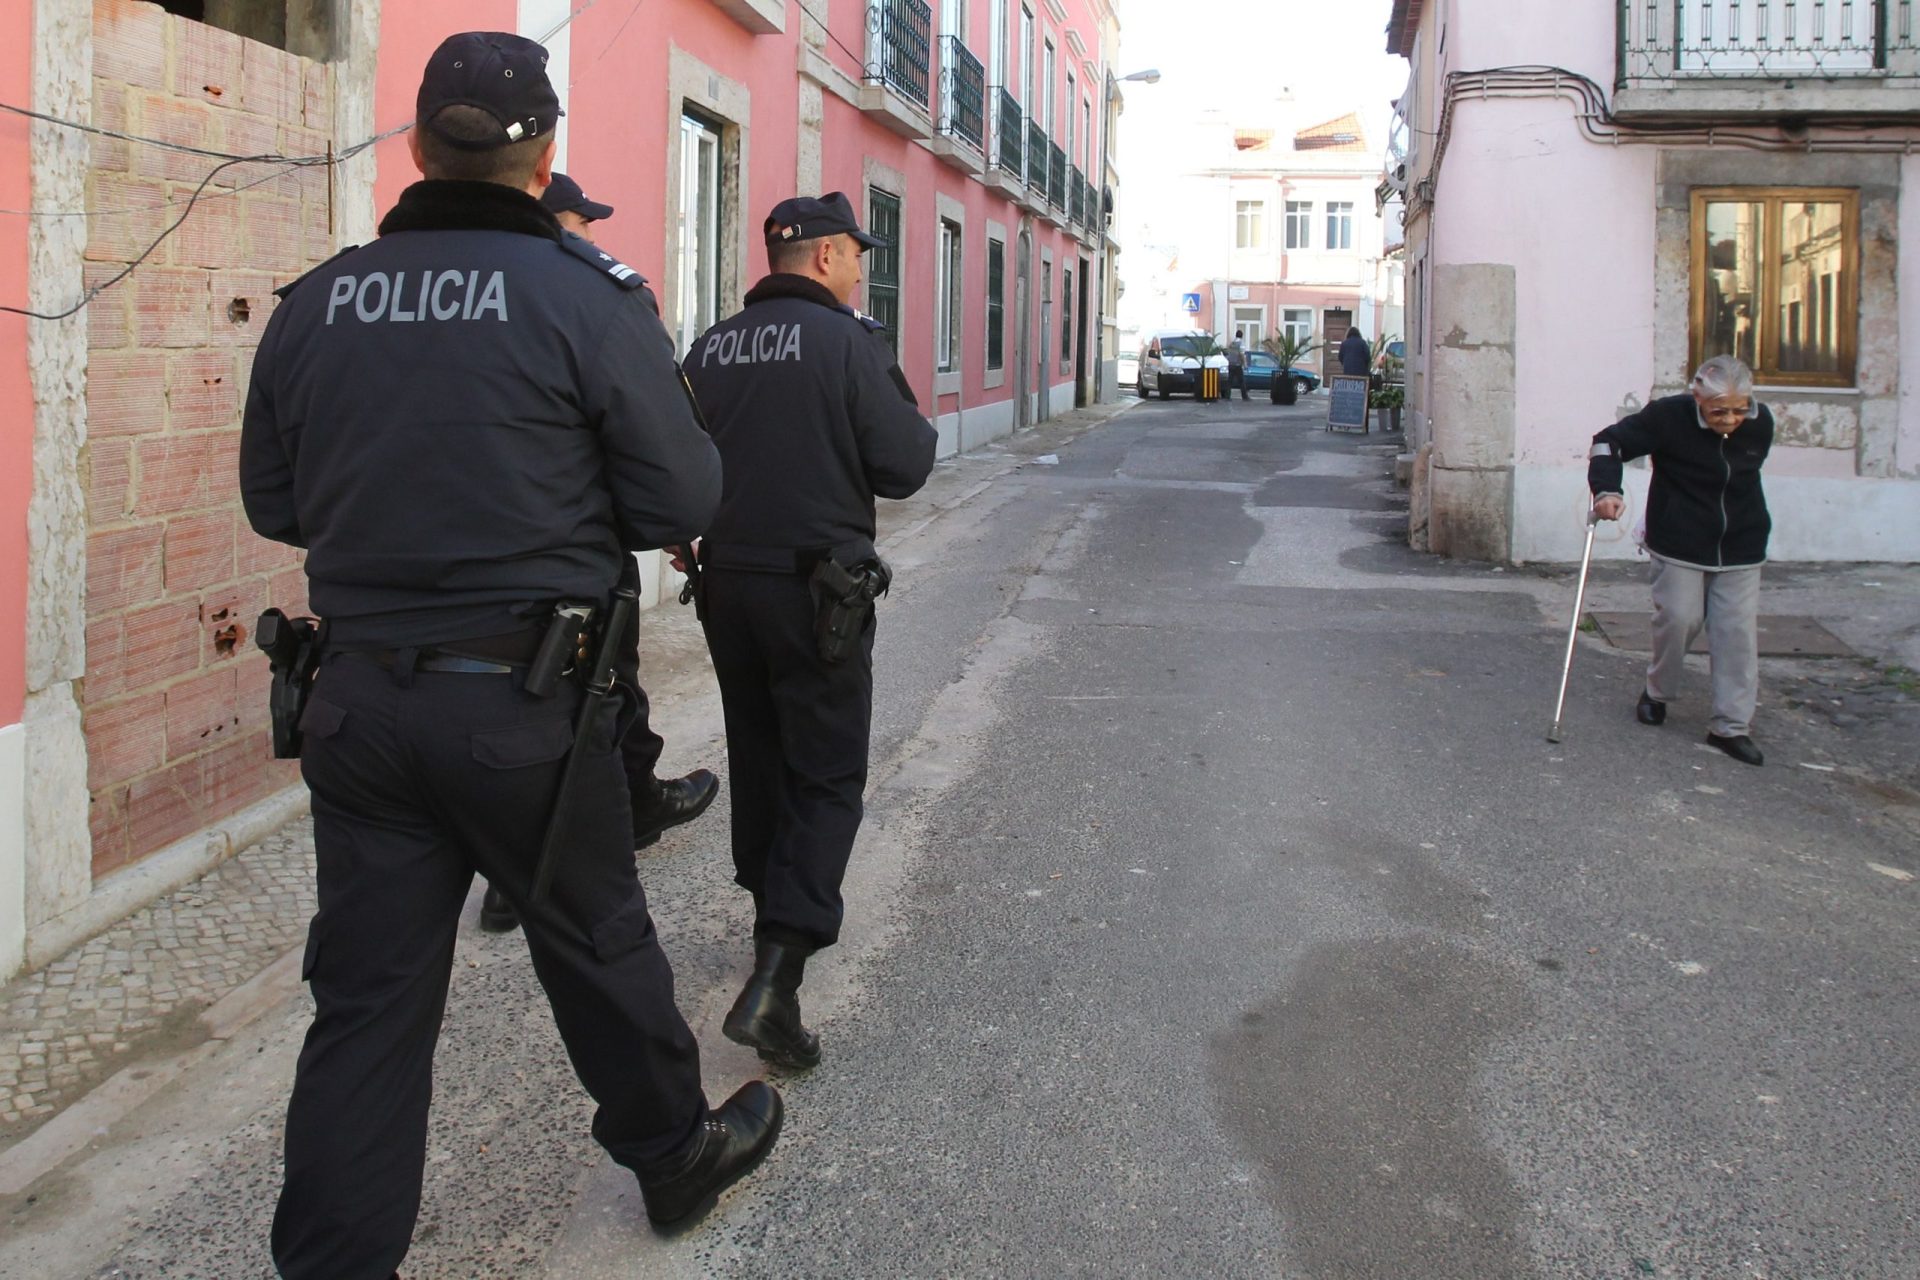 Polícia convicta de que ‘meets’ não têm cariz violento ou criminal